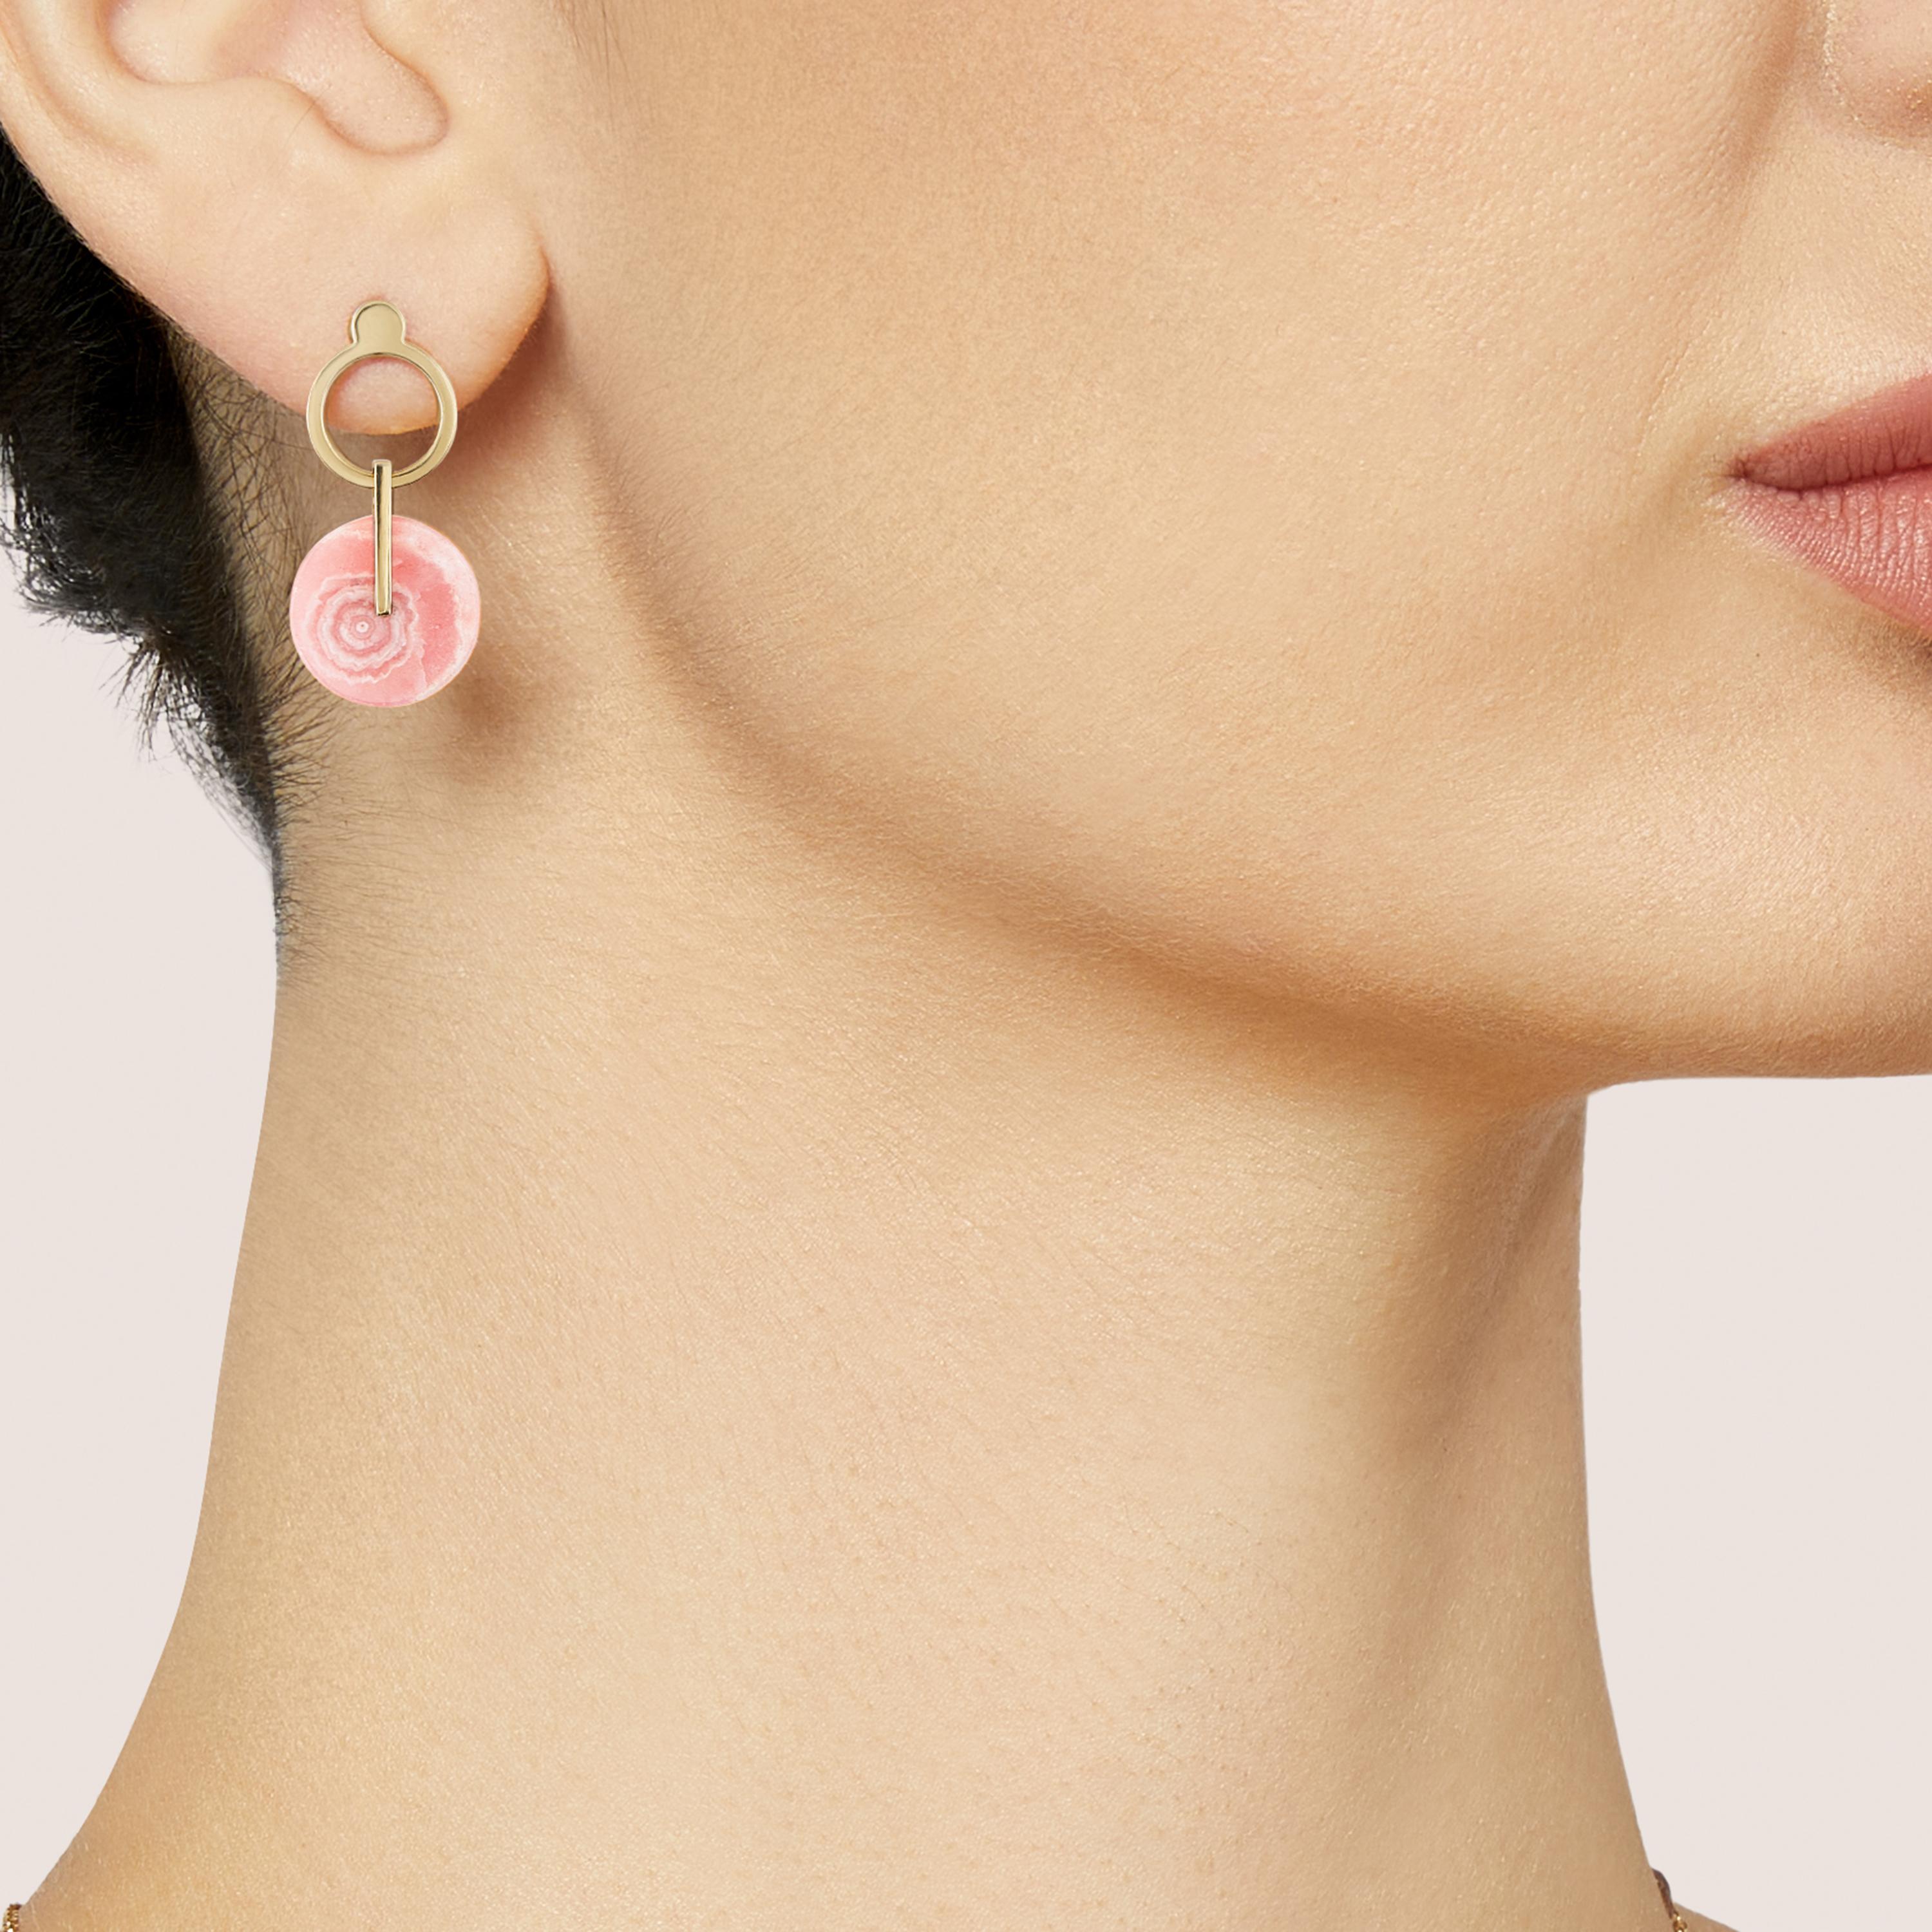 DISCO ist ein modernes Paar Ohrringe aus 18-karätigem Gelbgold und gebändertem Rodochrosit.
Rhodochrosit ist ein selten in reiner Form vorkommendes Mineral mit überwiegend rosaroter Farbe. Die häufiger vorkommende 